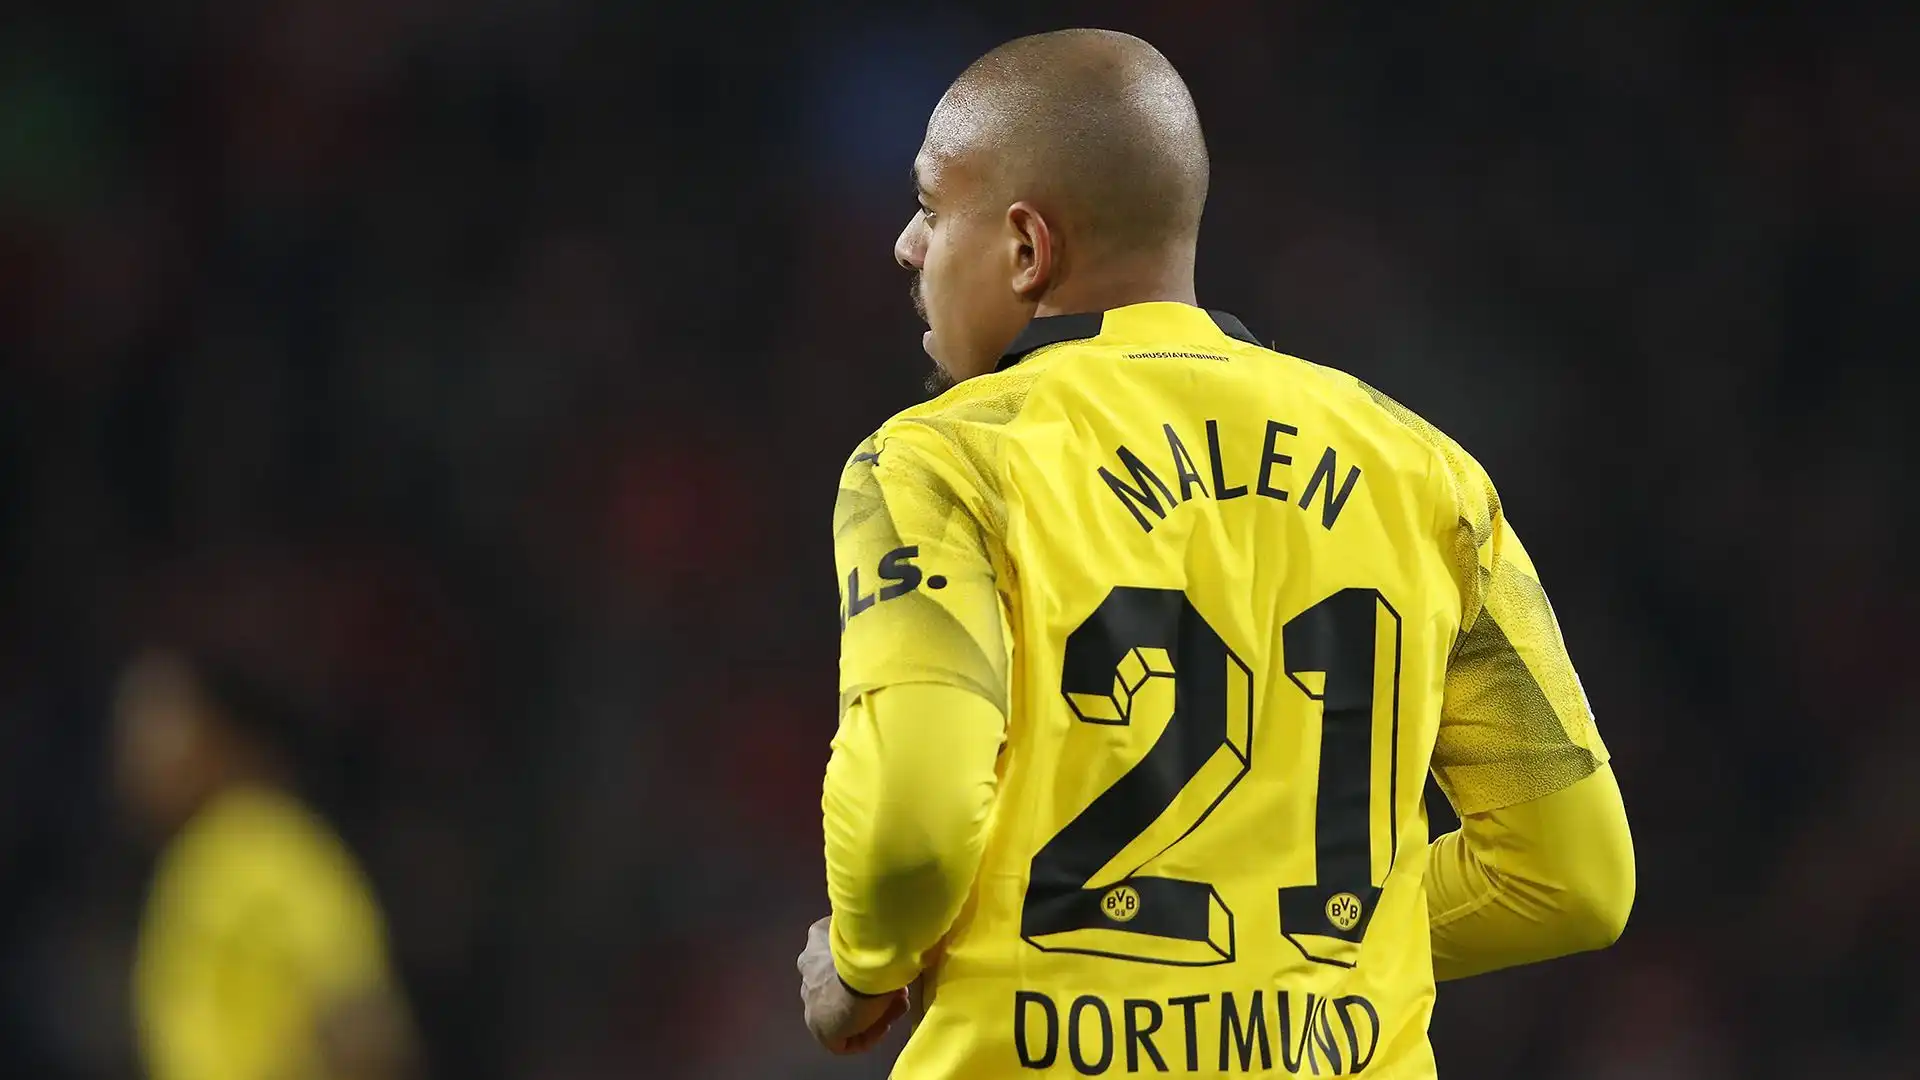 Malen è stato acquistato dal Borussia Dortmund nel 2021 per 30 milioni di euro